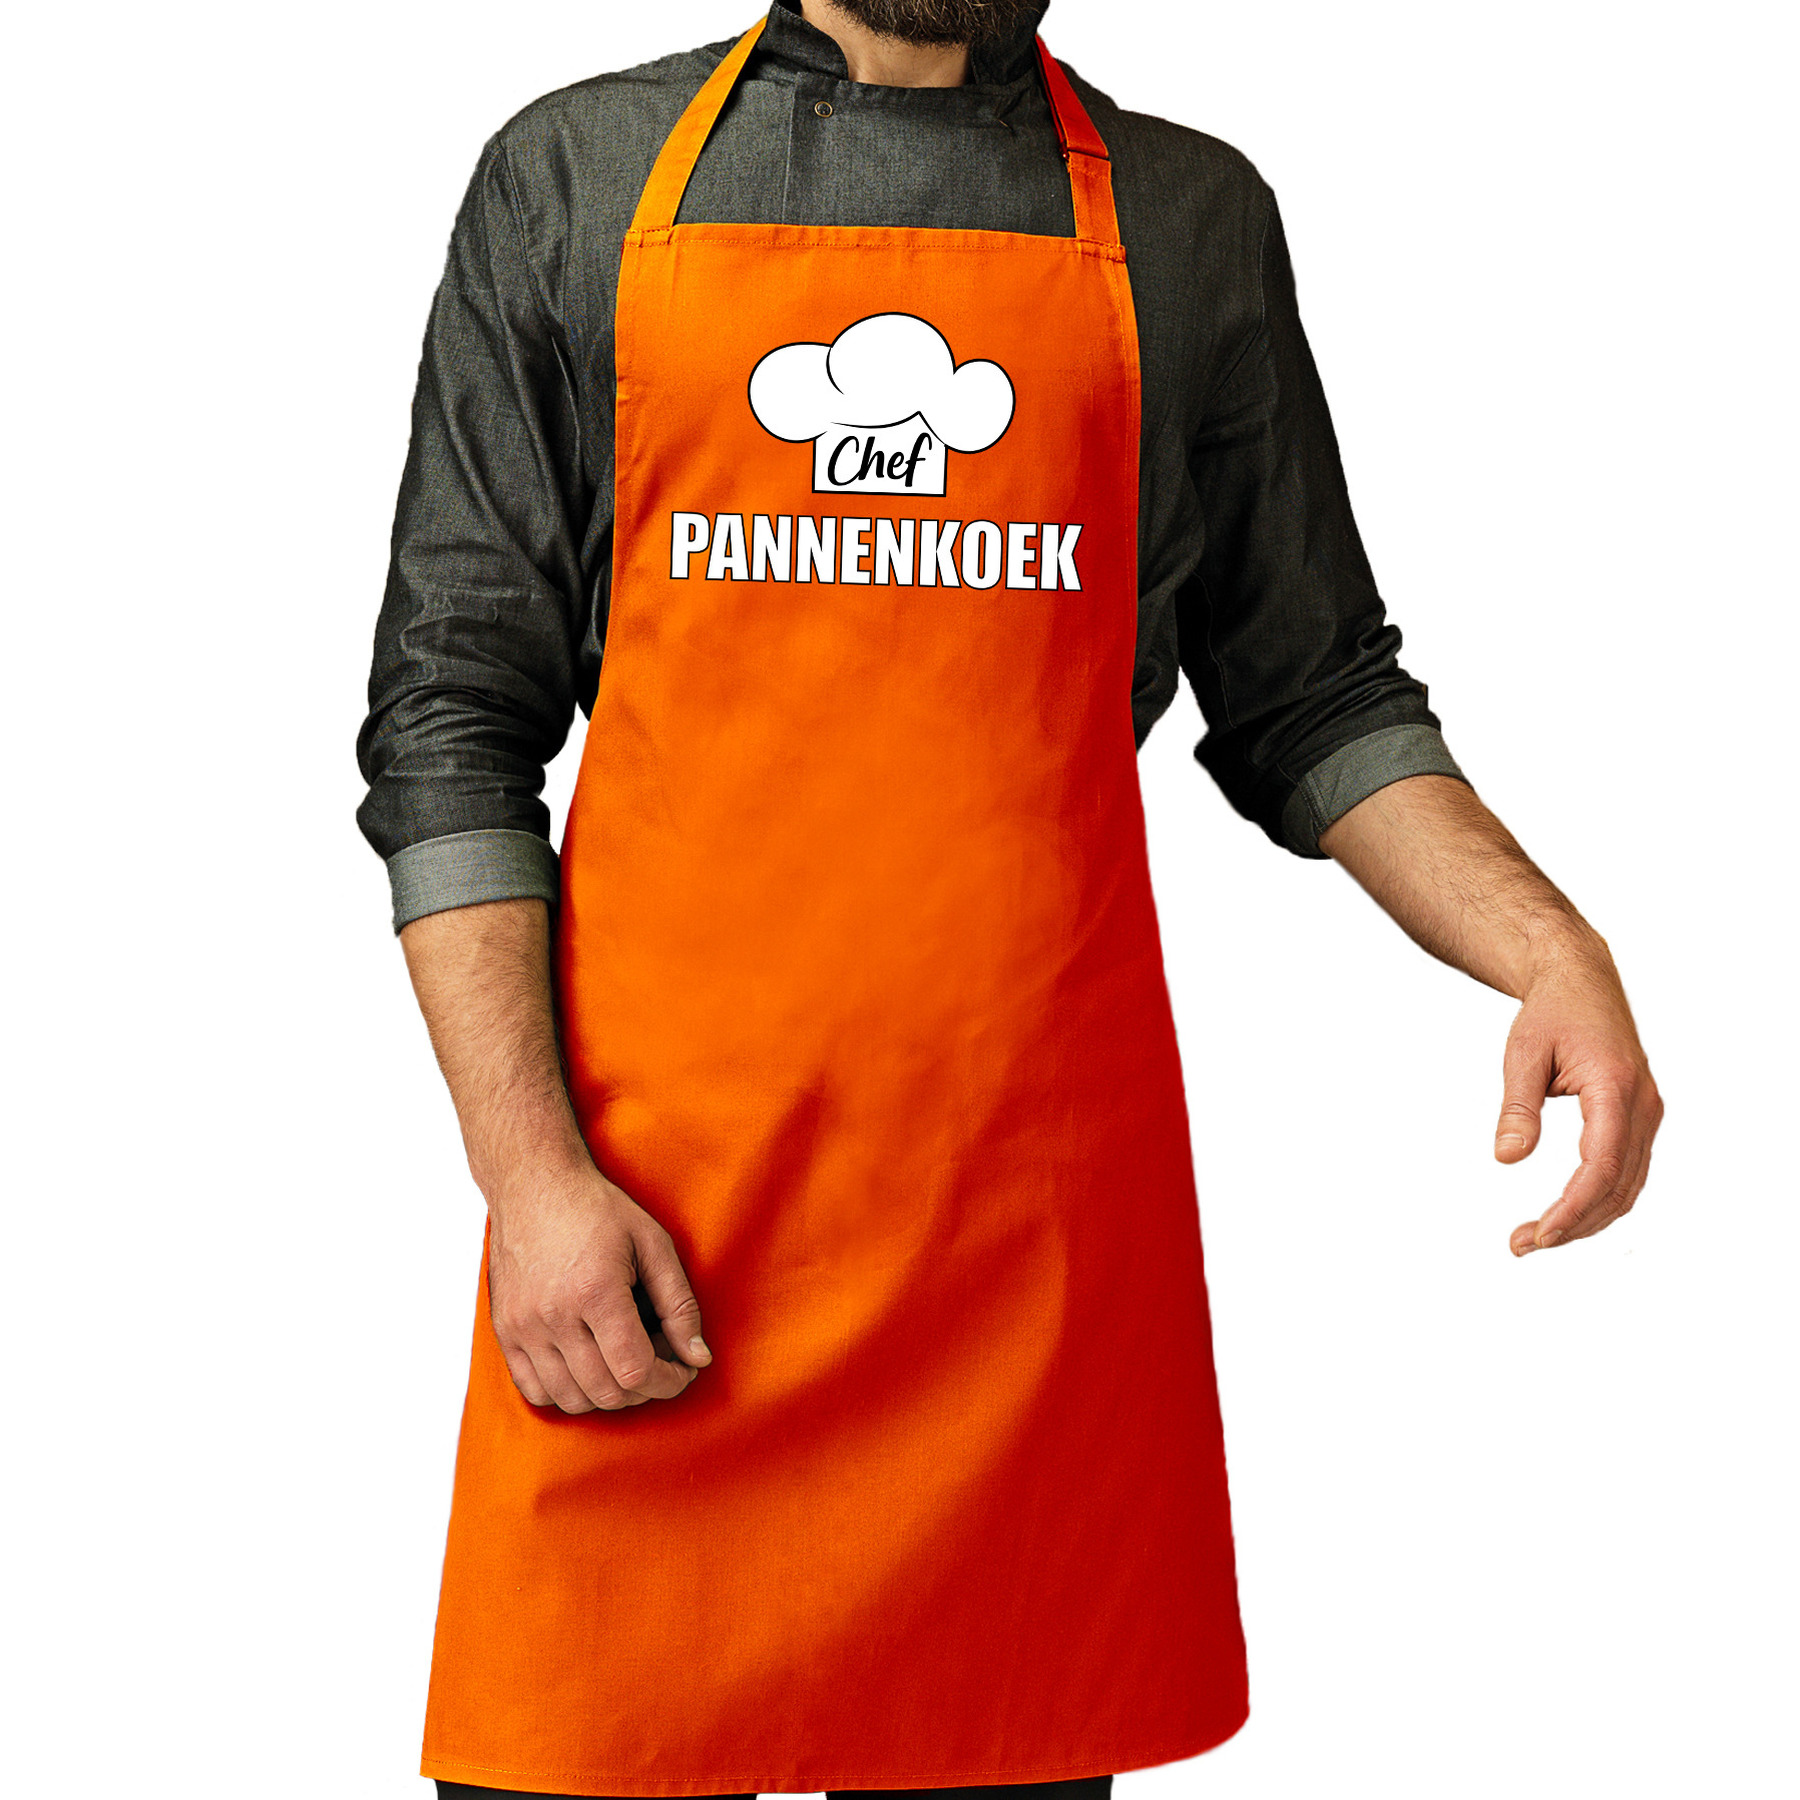 Chef pannenkoek schort - keukenschort oranje heren - Koningsdag/ Nederland/ EK/ WK